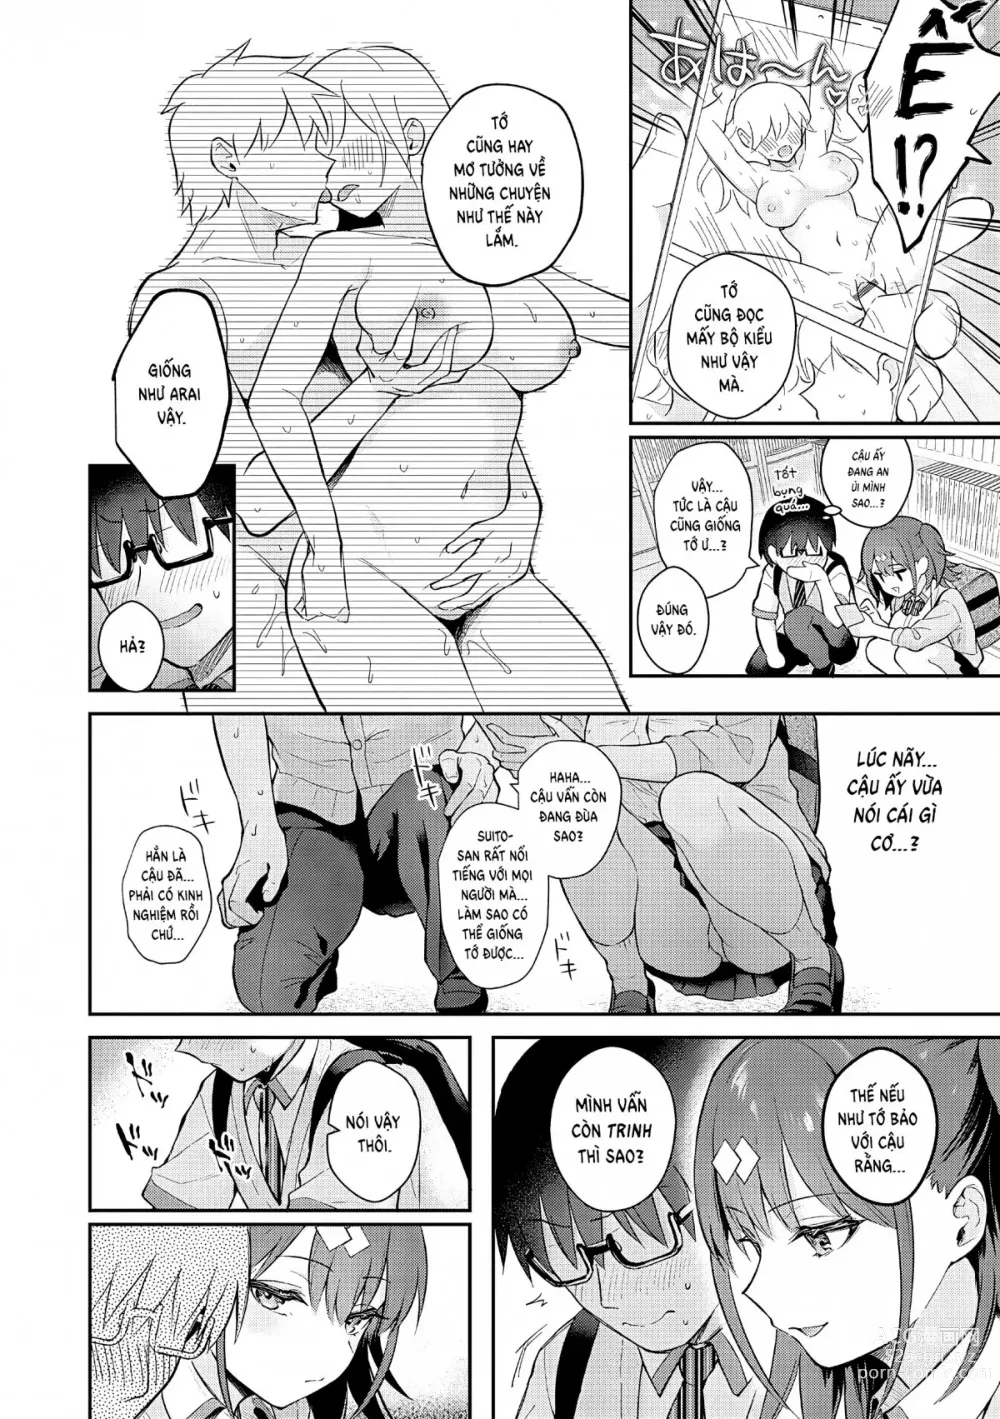 Page 7 of manga Tuyệt hơn cả giả tưởng (decensored)